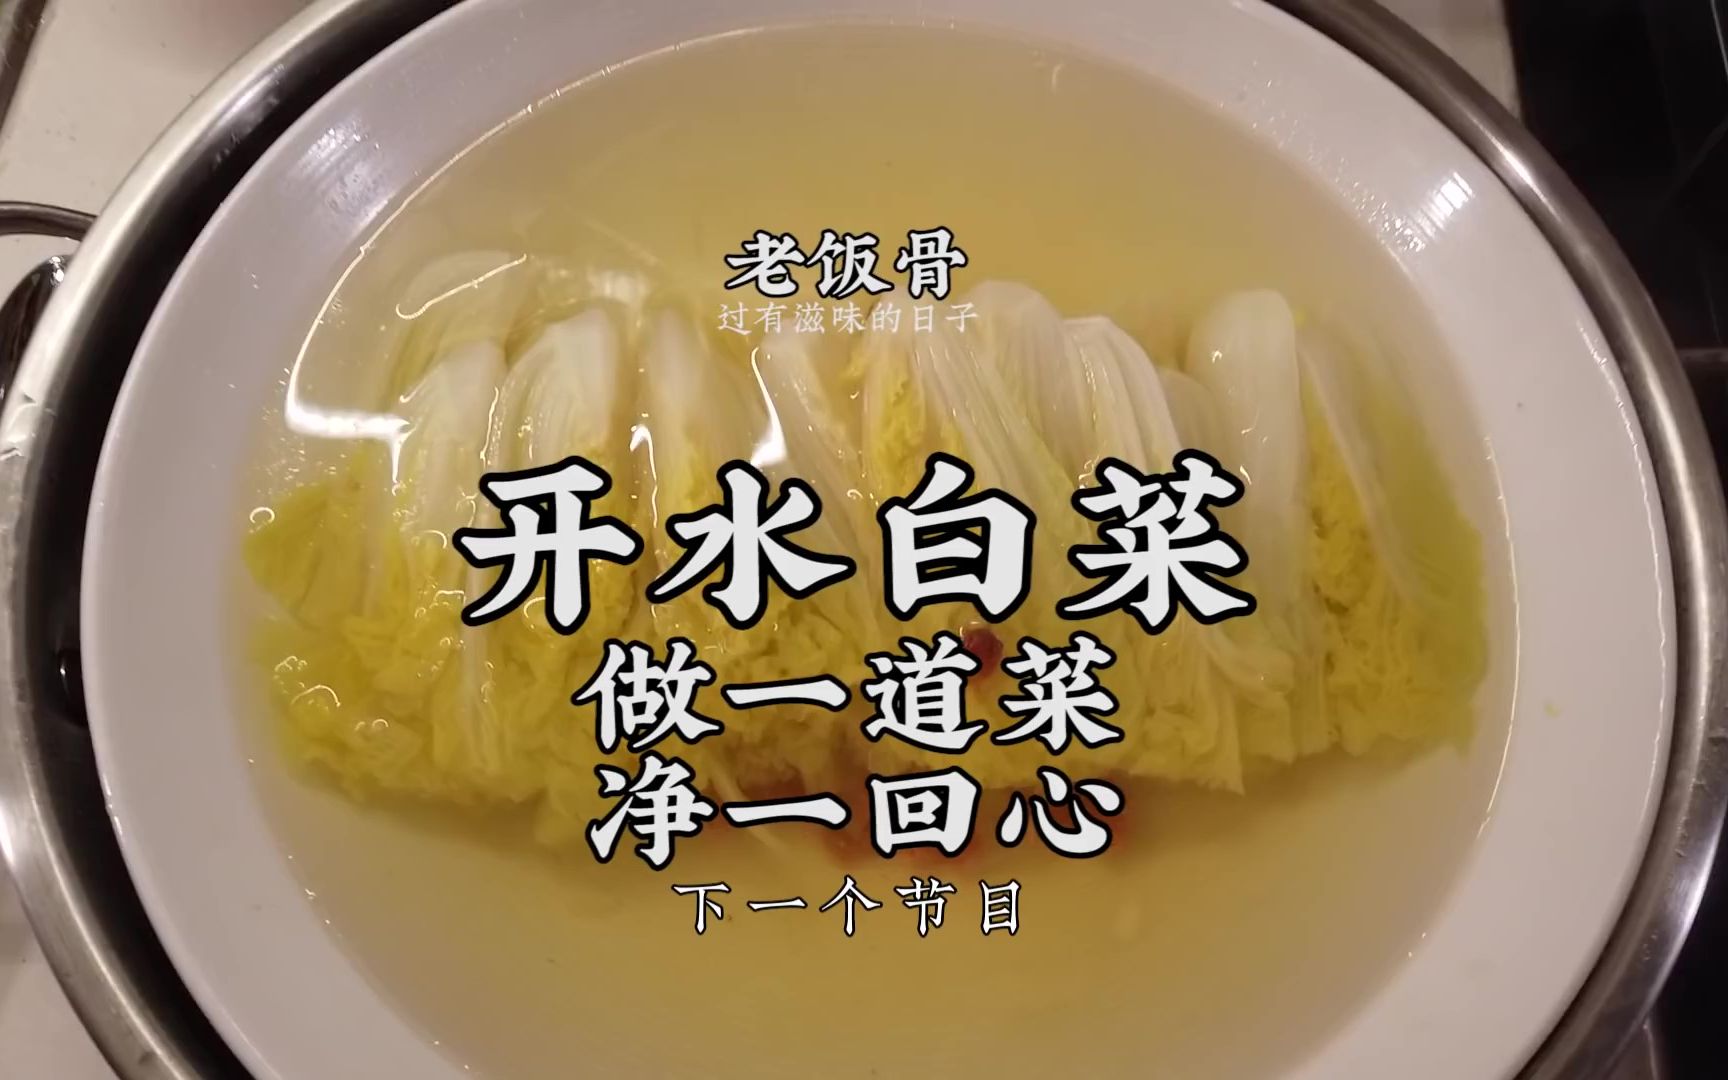 国宴大师61开水白菜顶级川菜国宴一绝形如开水回味无穷的清口菜特级